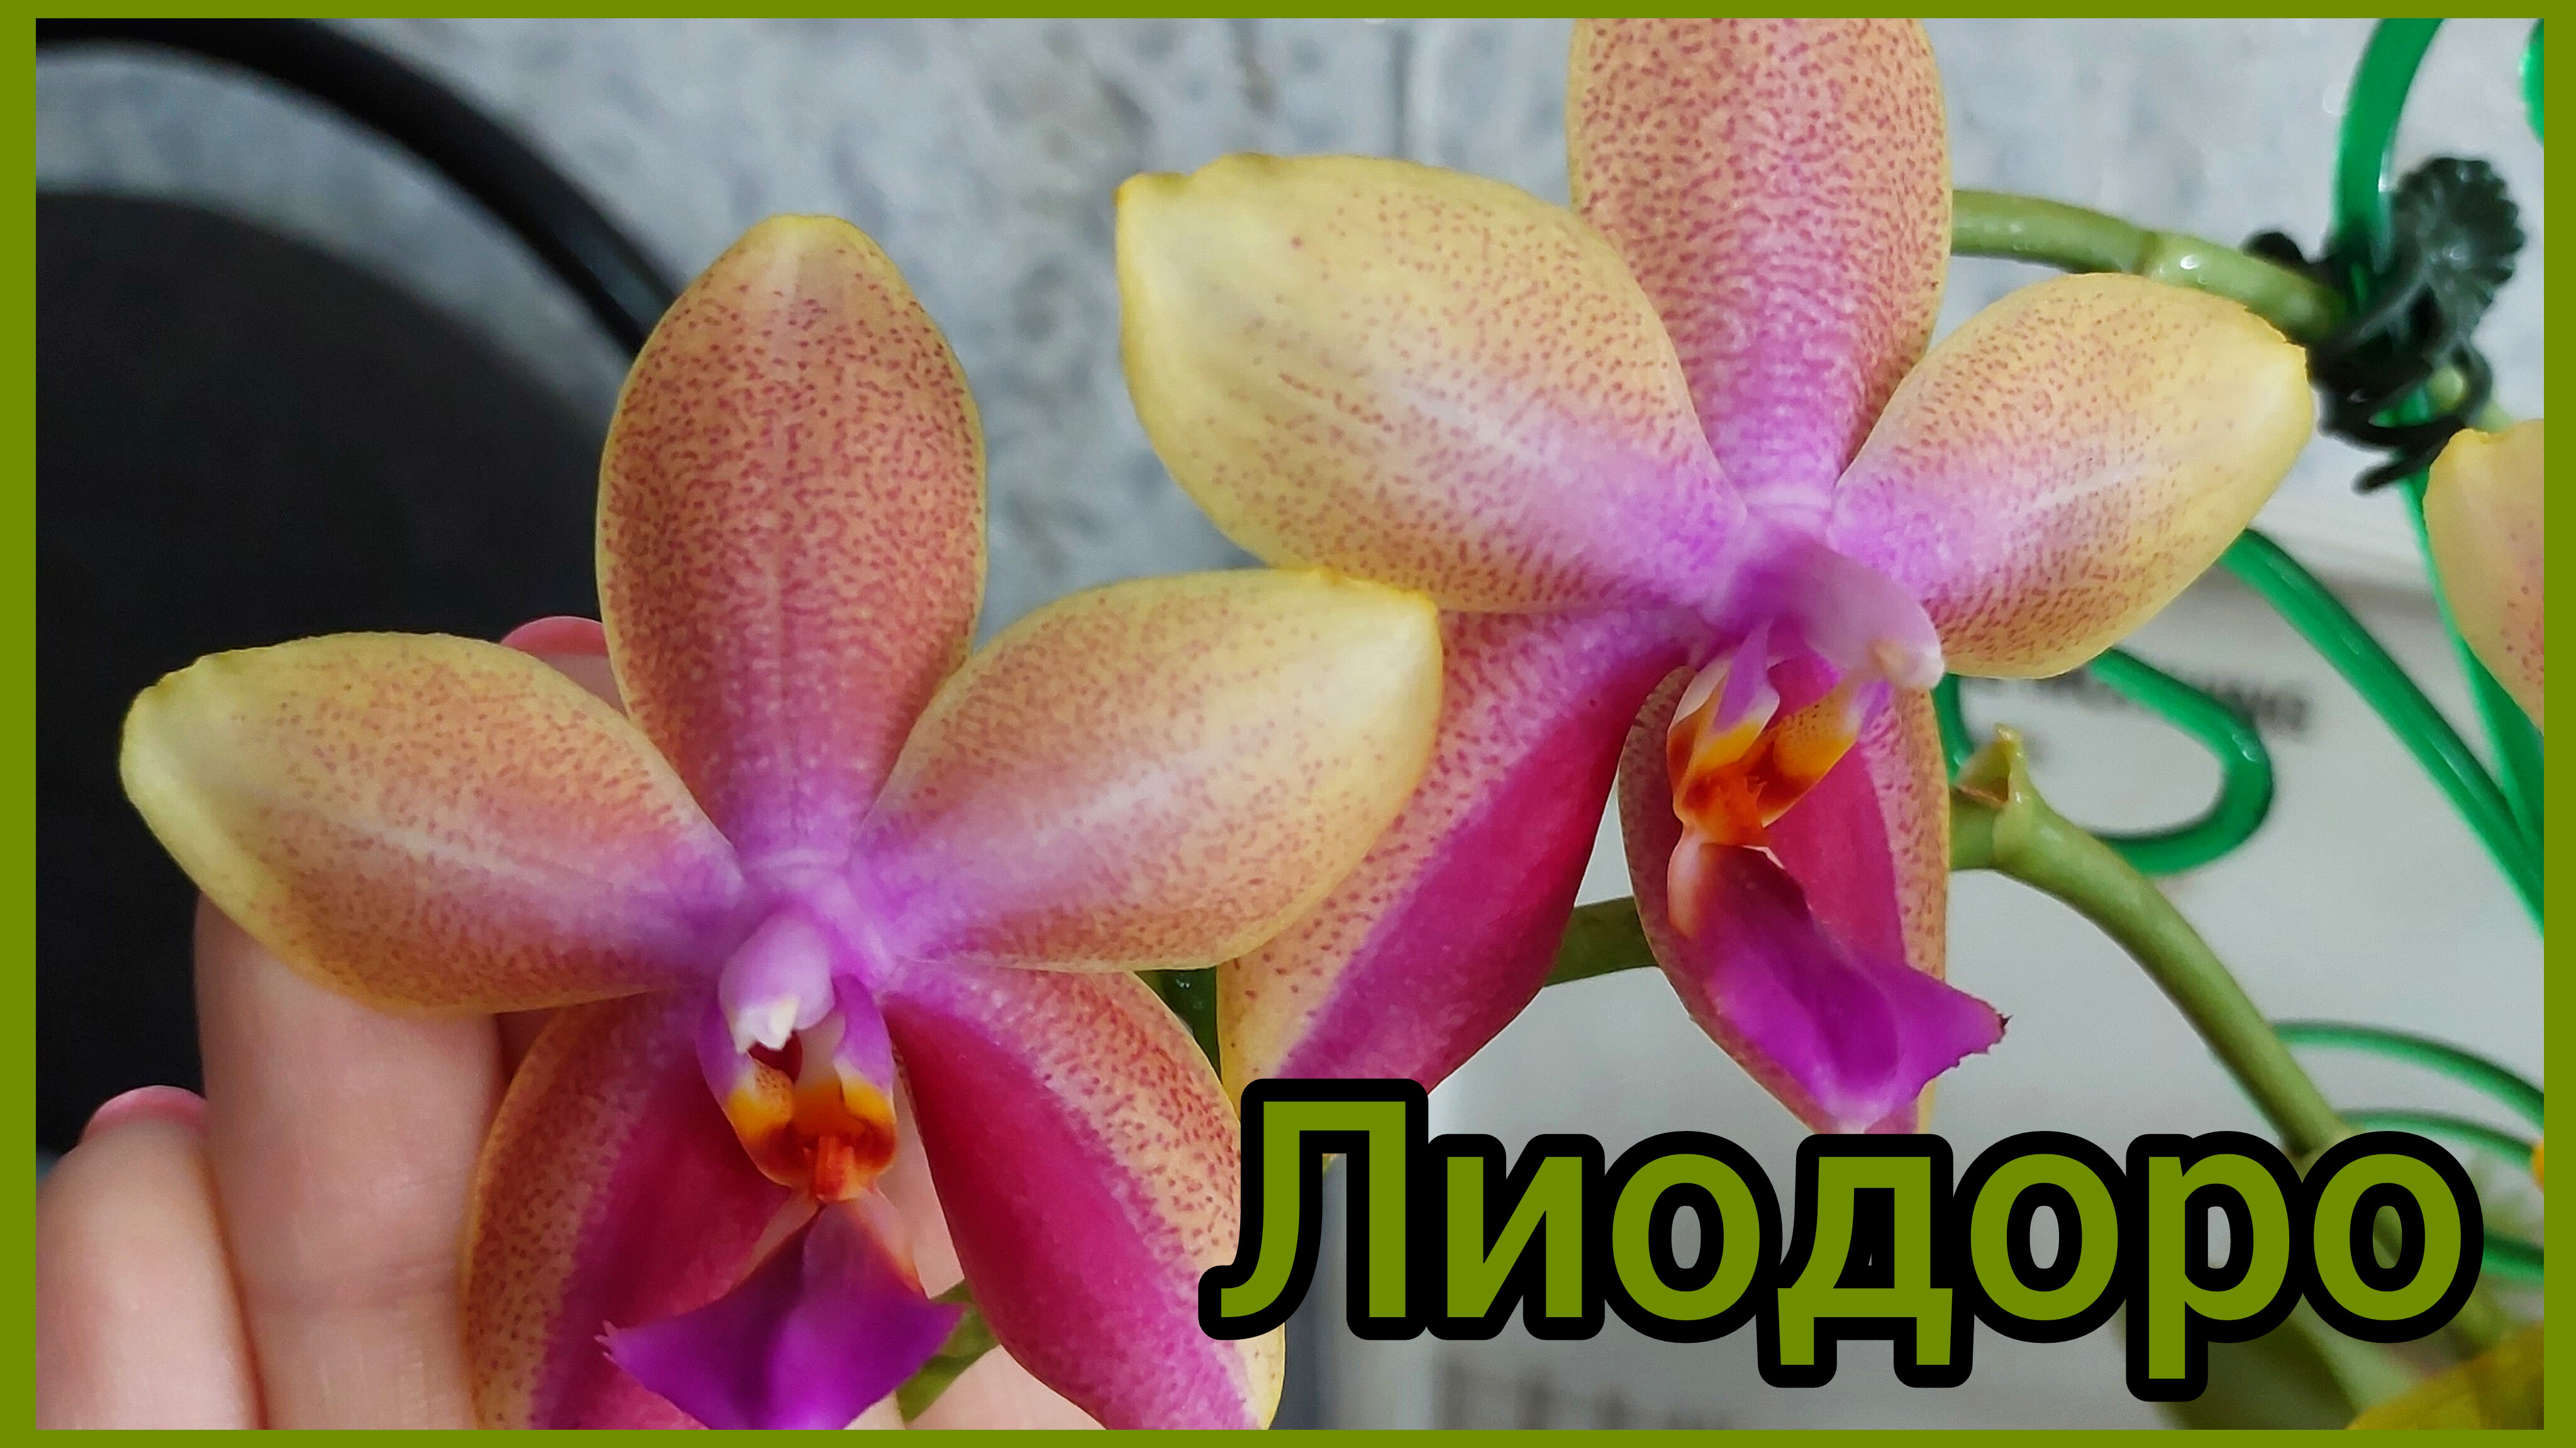 Небольшой, но рекорд🌸 #фаленопсис Лиодоро набирает мощь #орхидеи #цветы #растения #цветениеорхидей